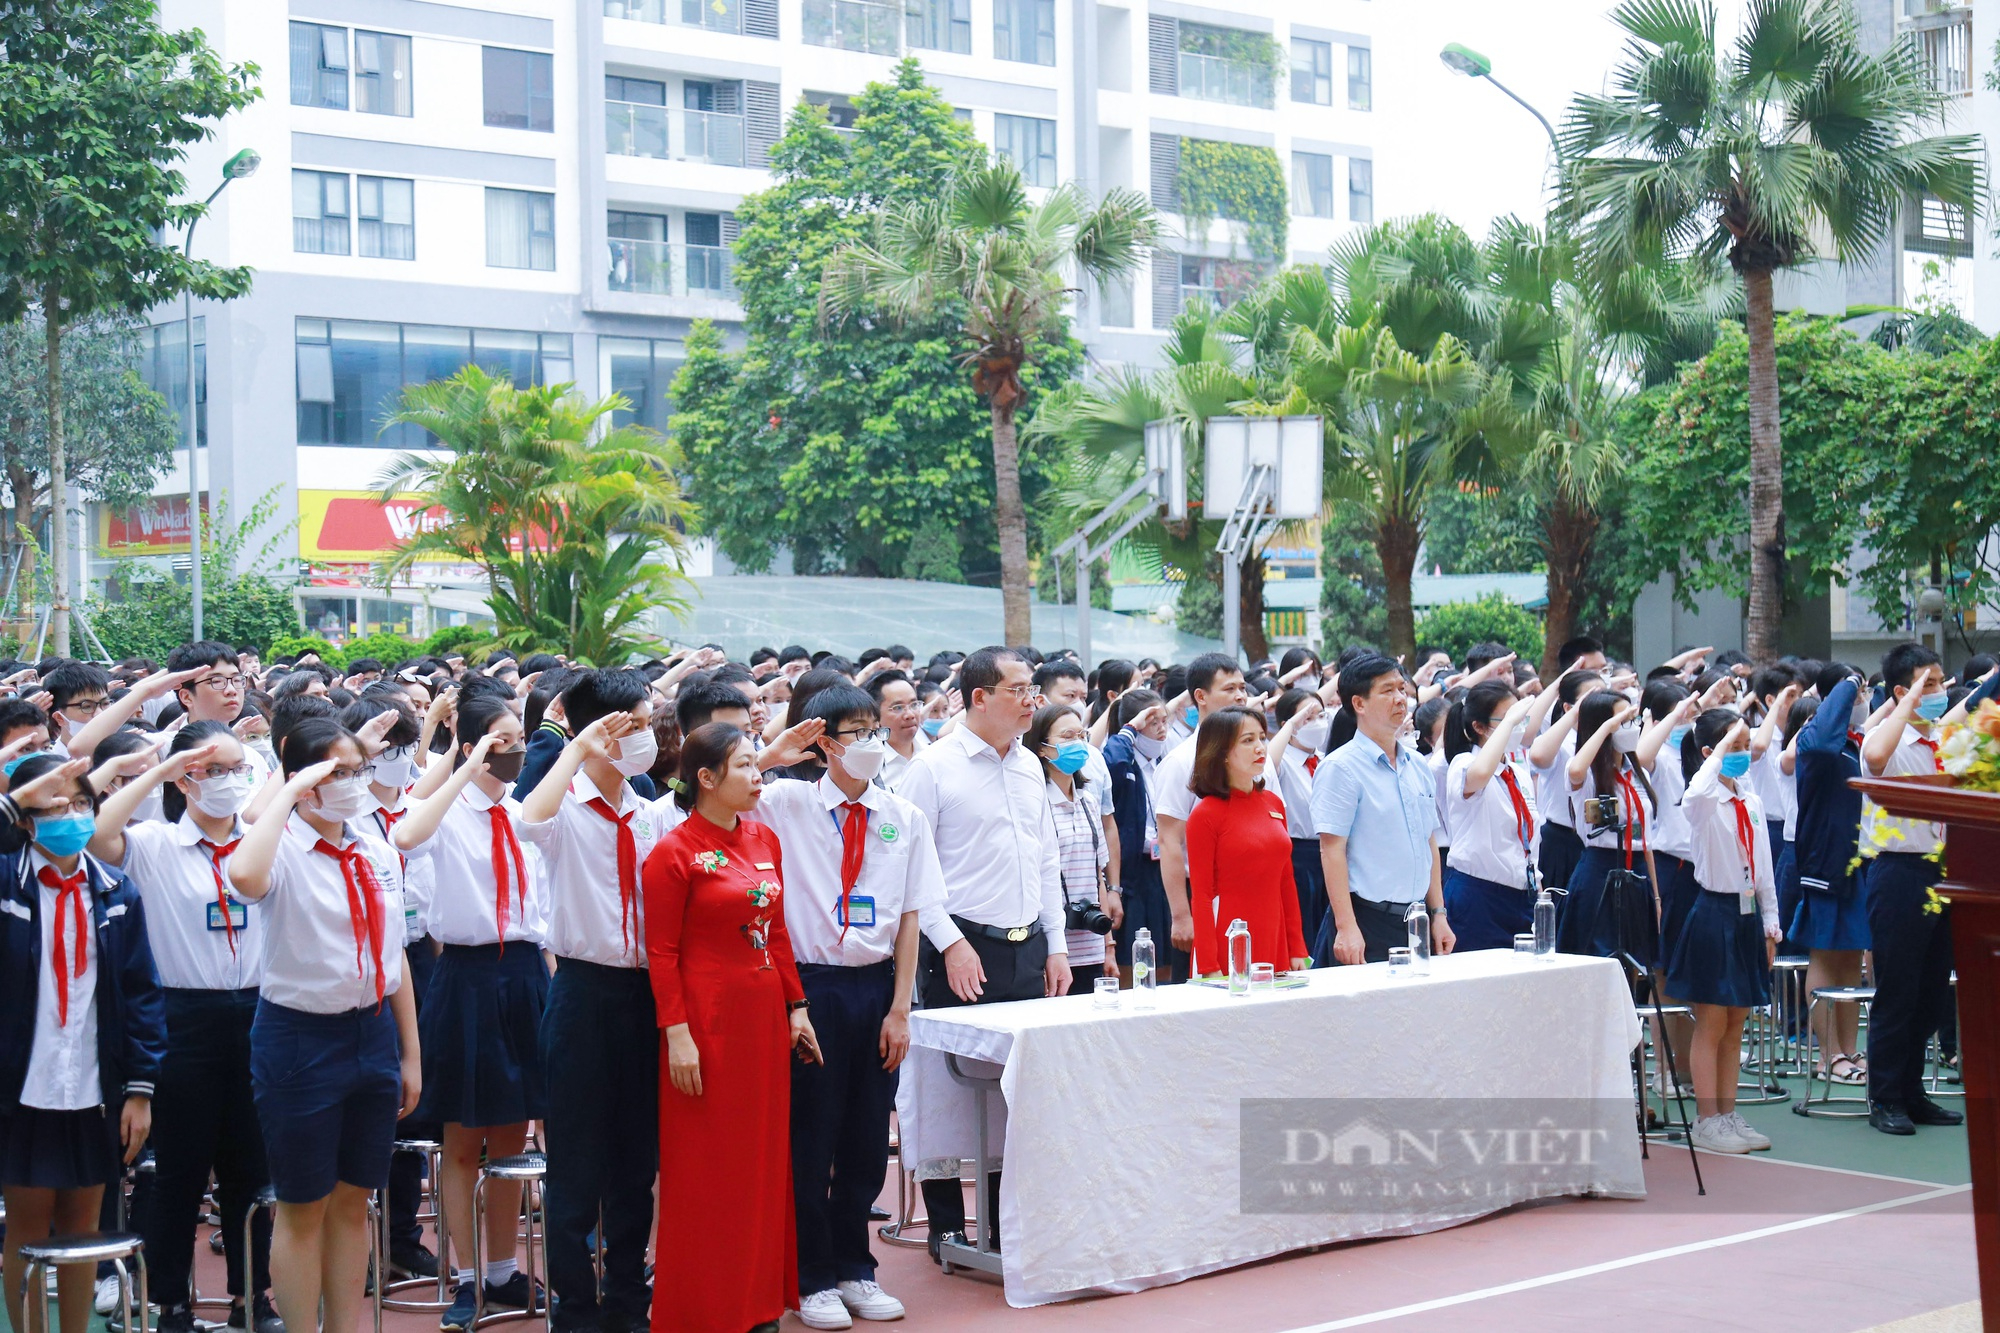 Ngày học cuối cùng đầy ắp kỷ niệm, học sinh Hà Nội chính thức nghỉ hè - Ảnh 1.